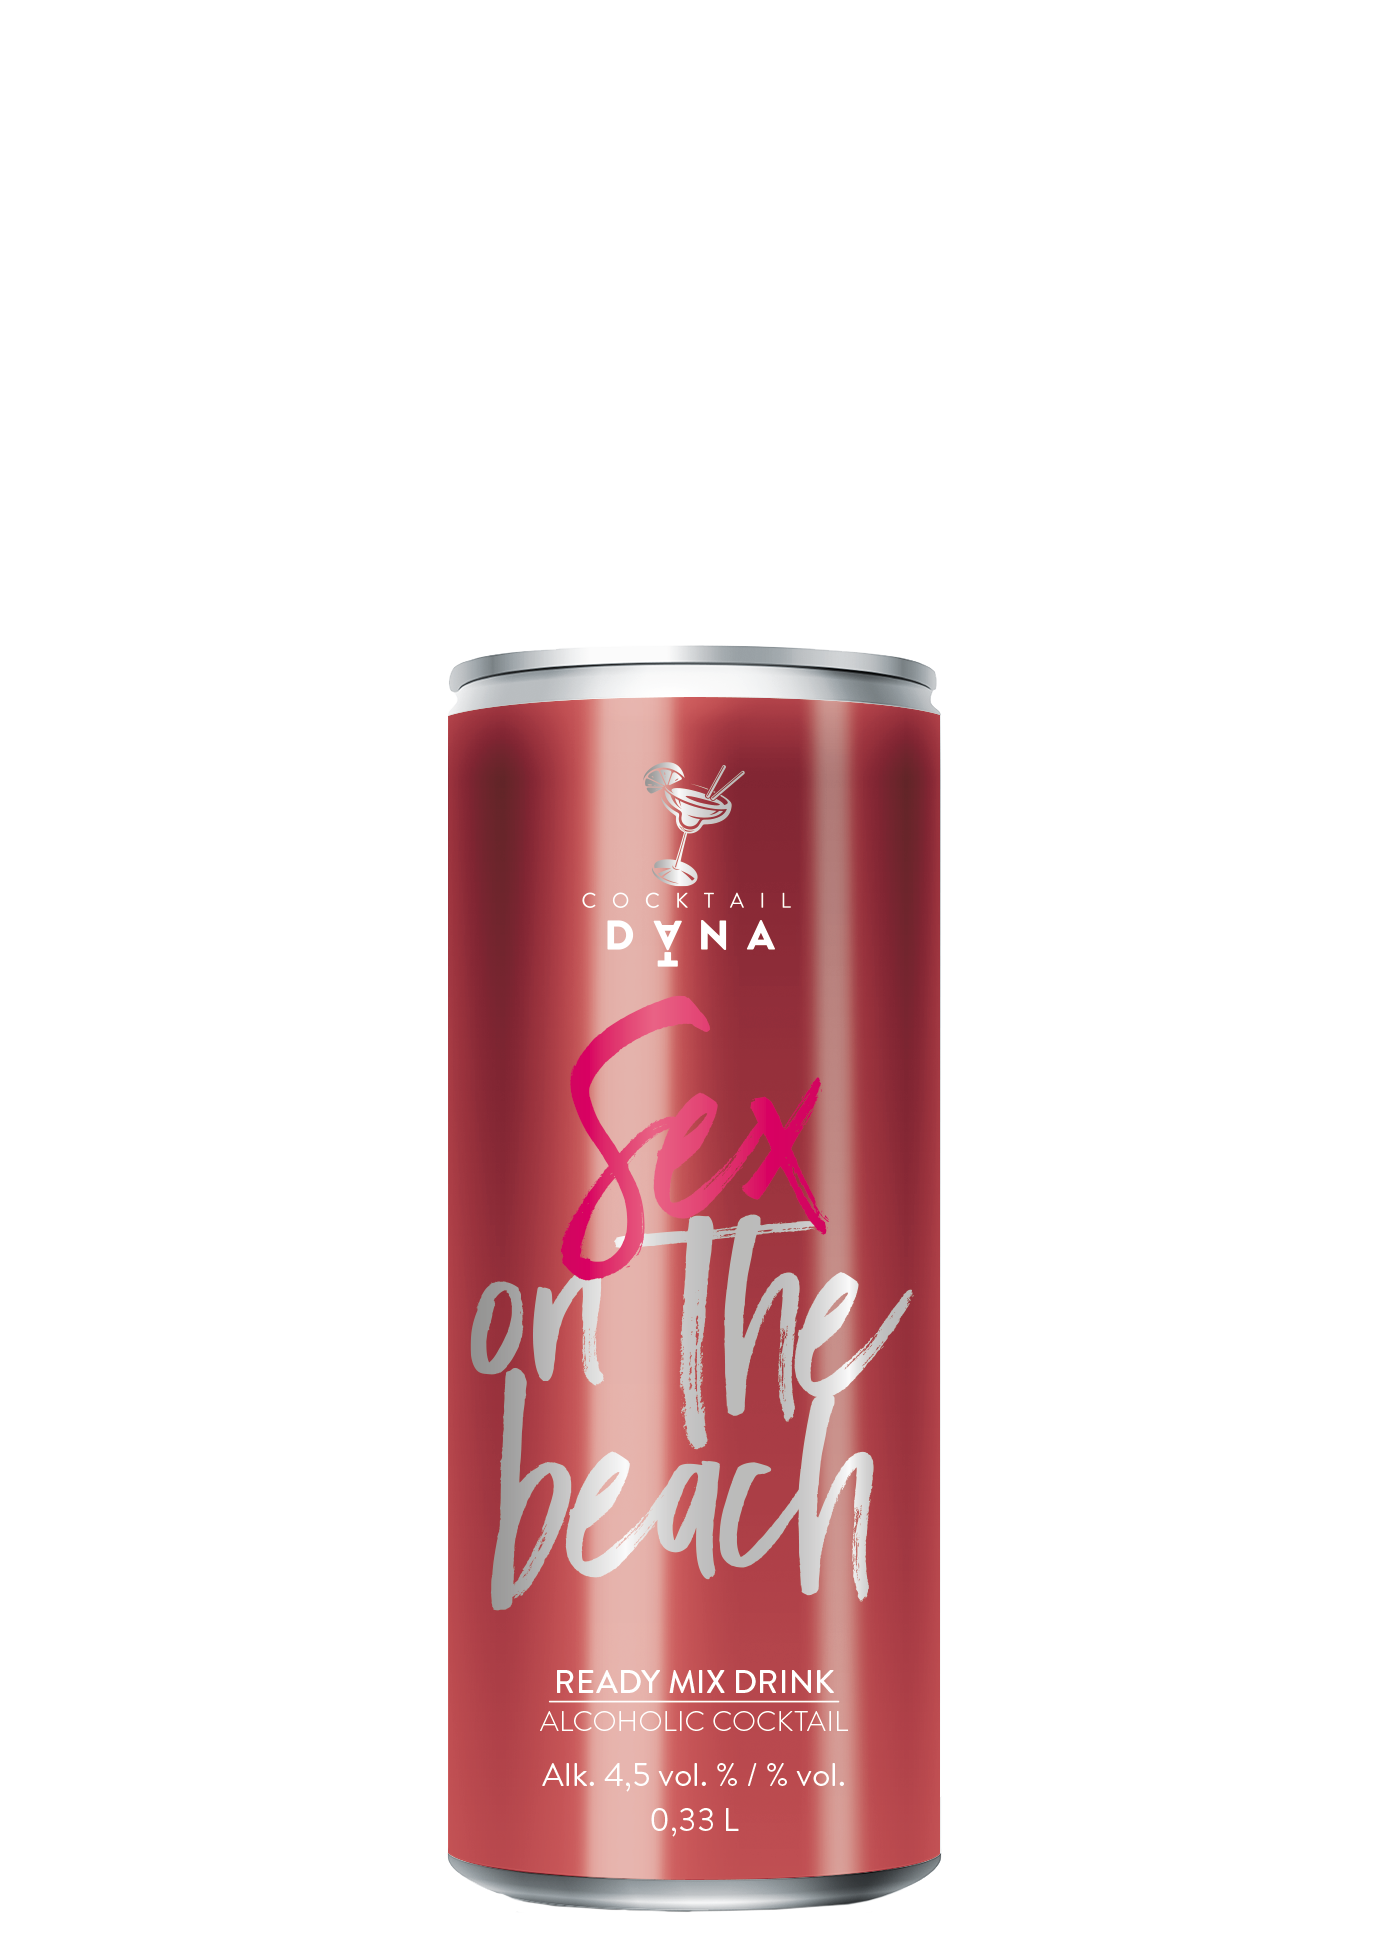 Dana Cocktail Sex on the beach, alc.: 4,5 % vol.